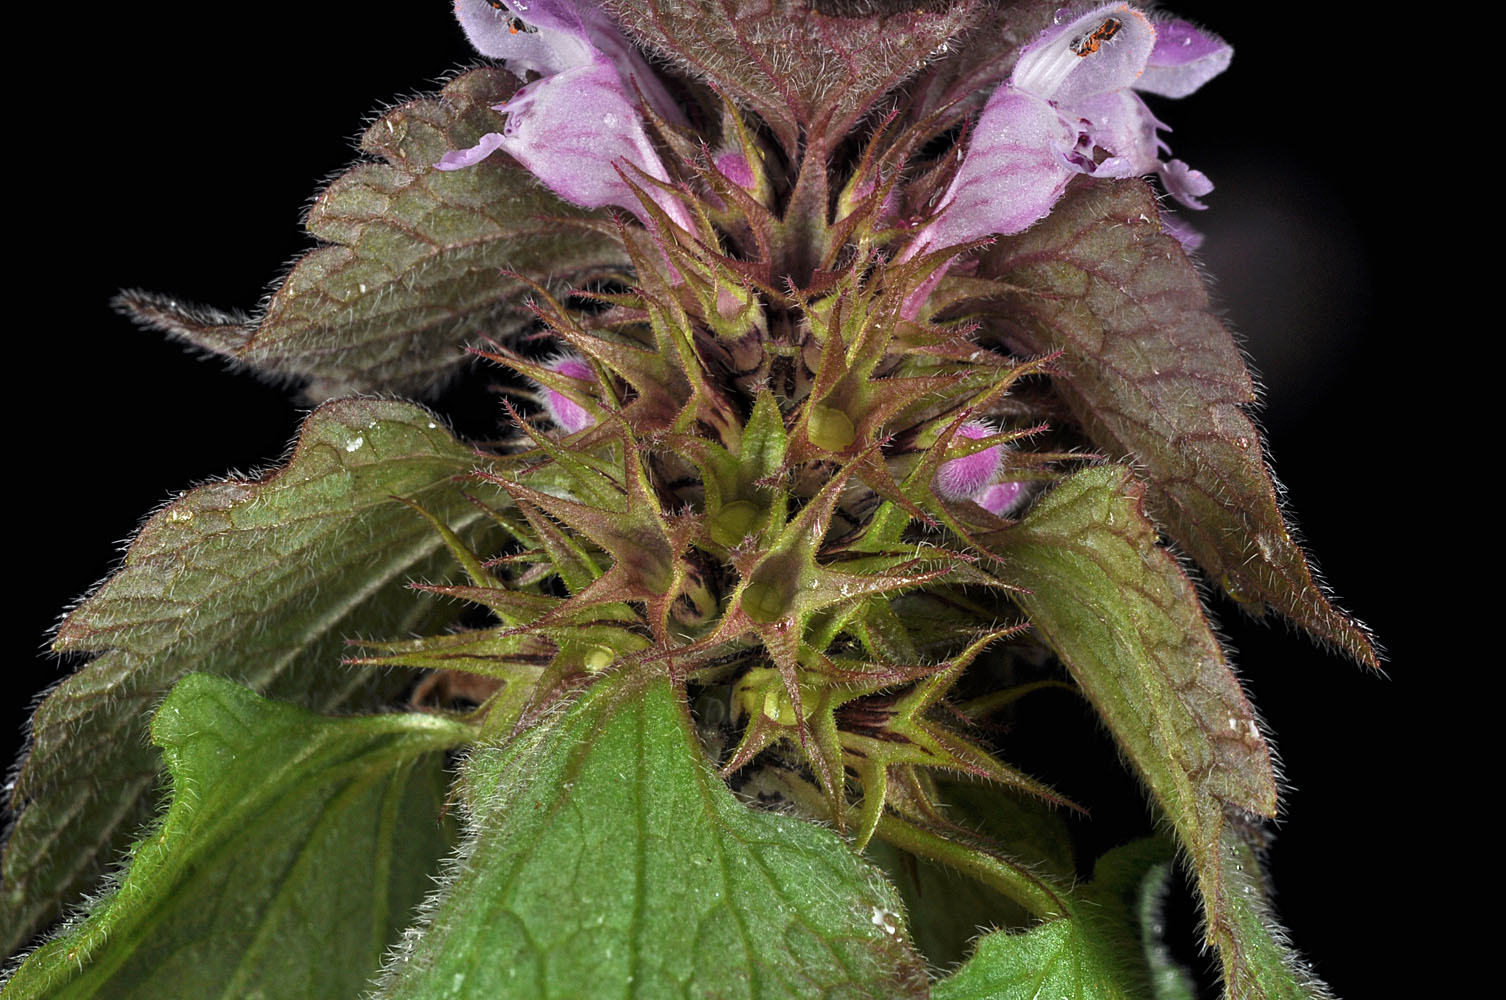 Flora of Eastern Washington Image: Lamium purpureum